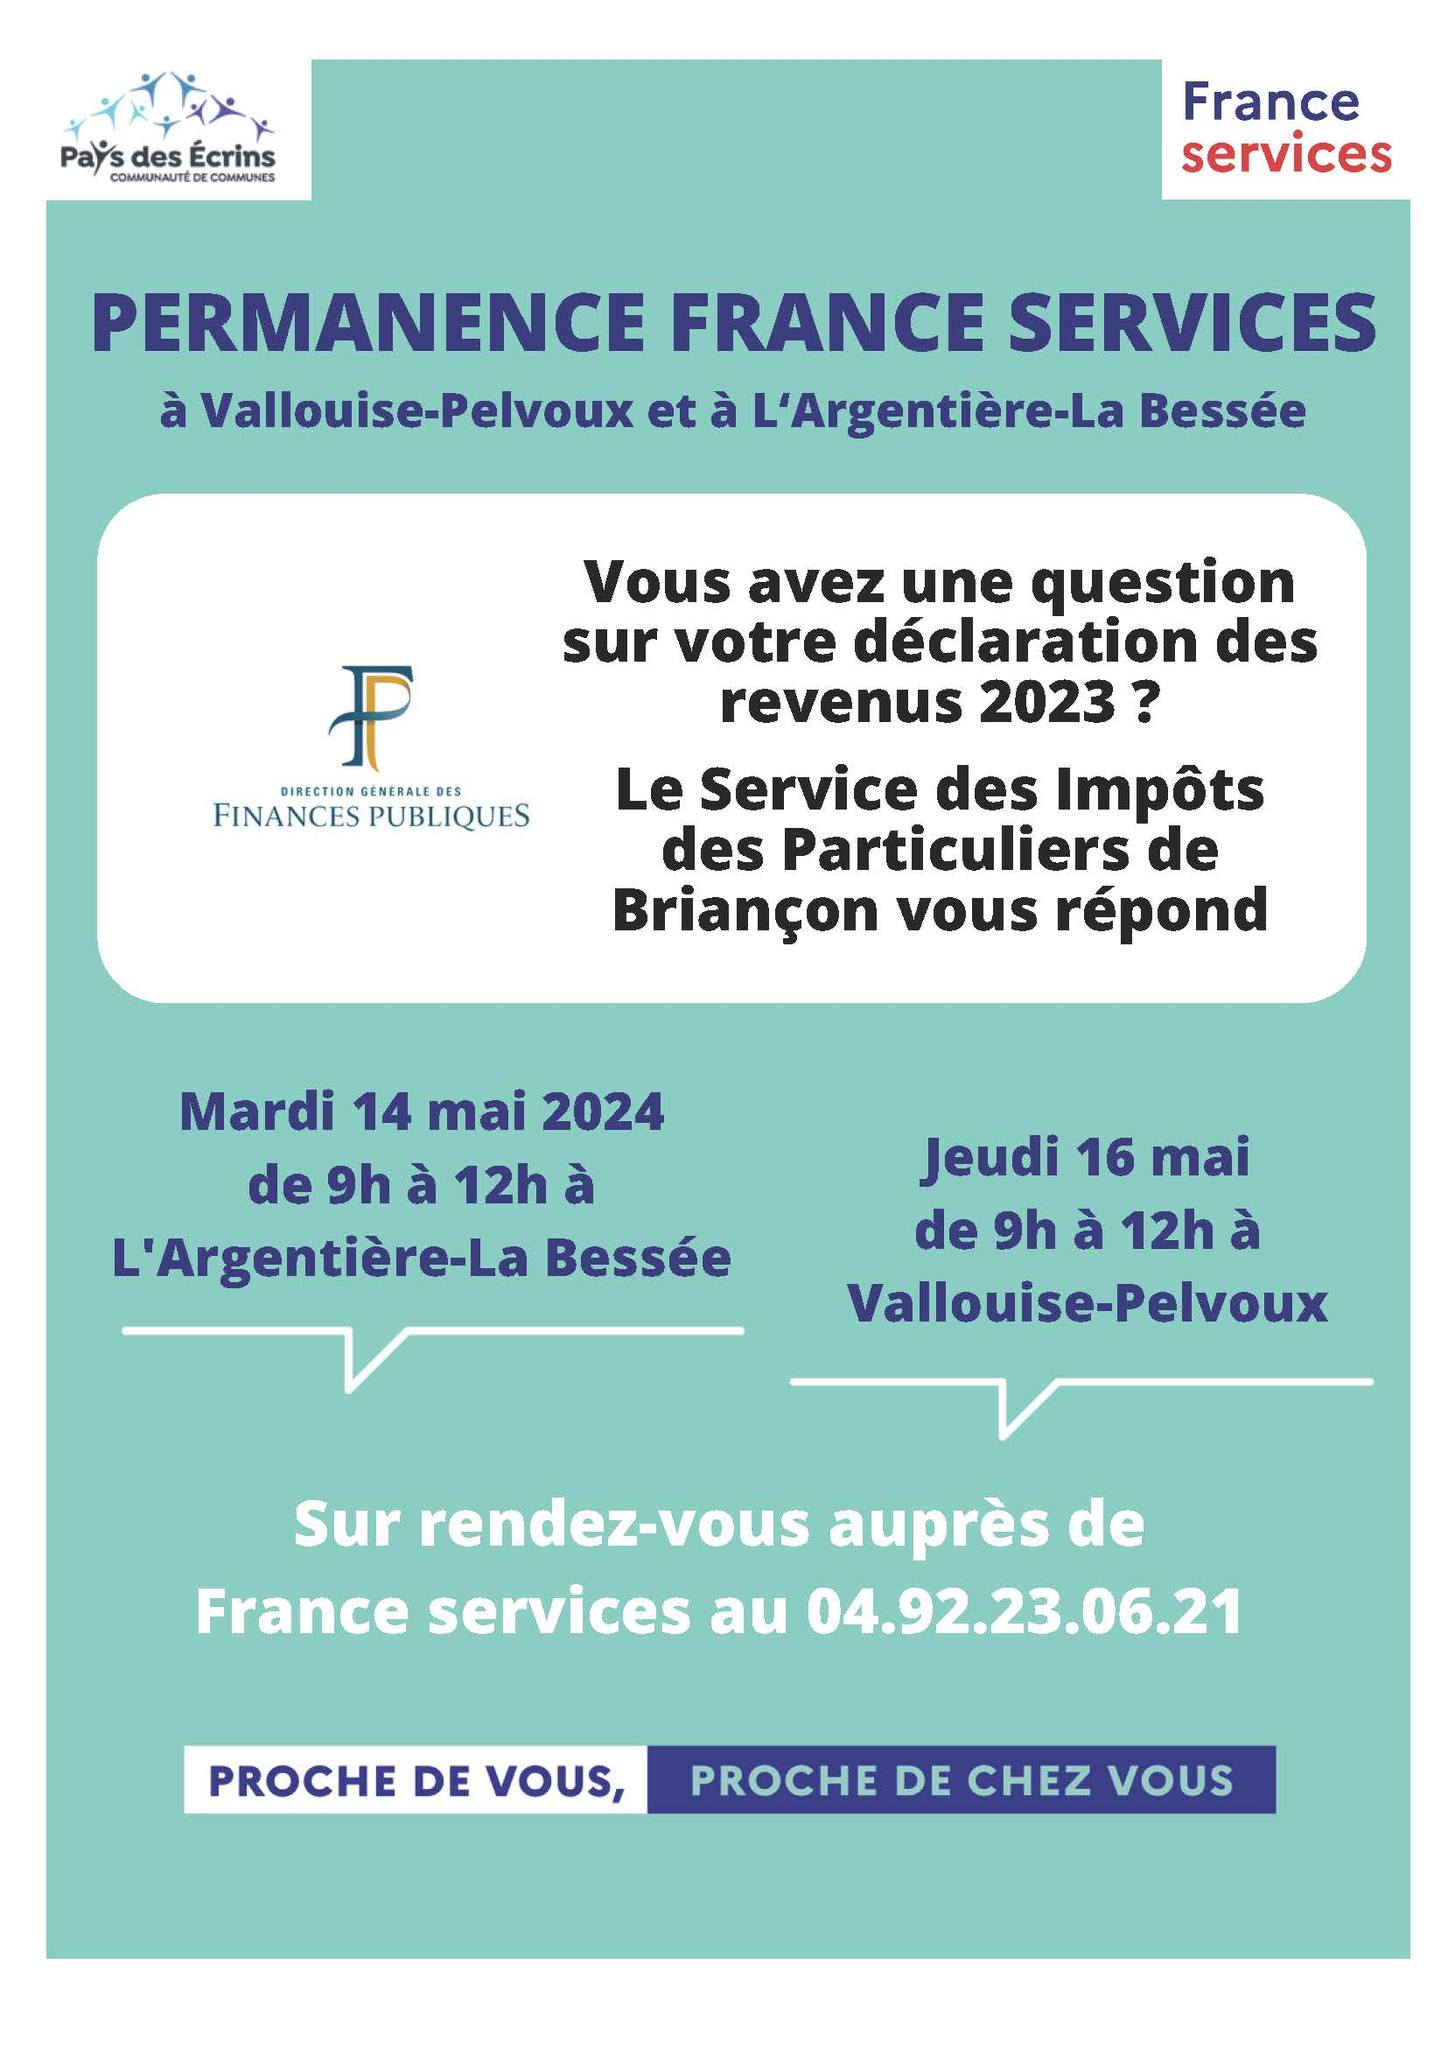 Permanence du service des impôts à France services